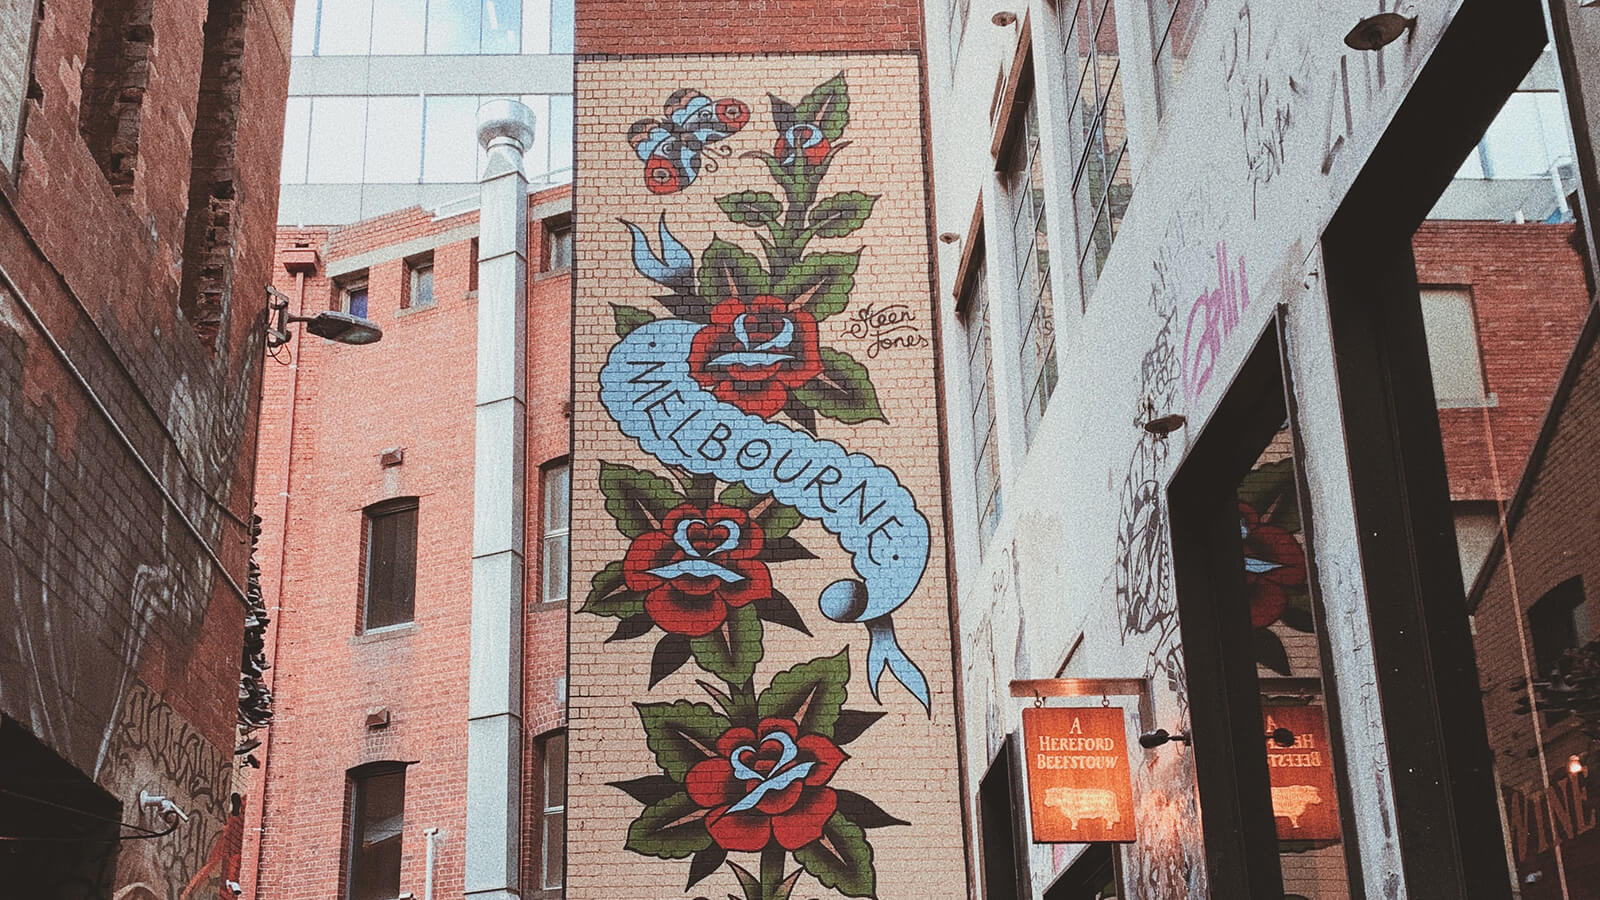 Image of graffiti in Melbourne, Australia